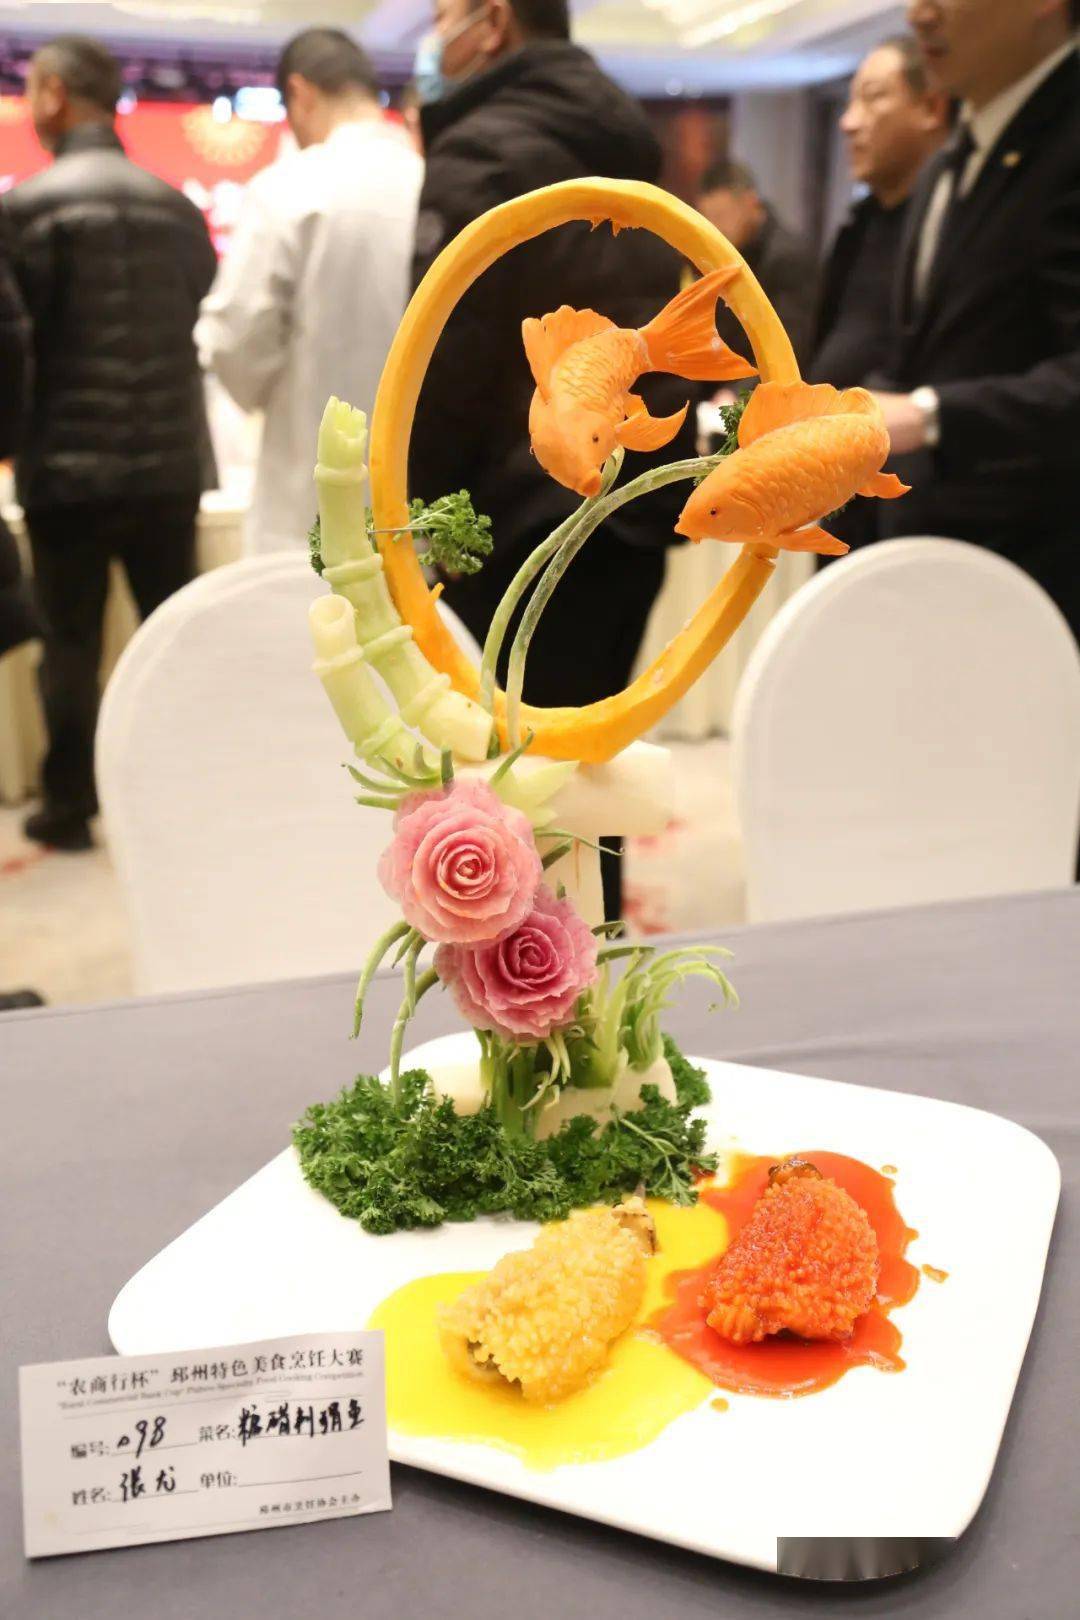 美食大赛获奖菜品图片图片